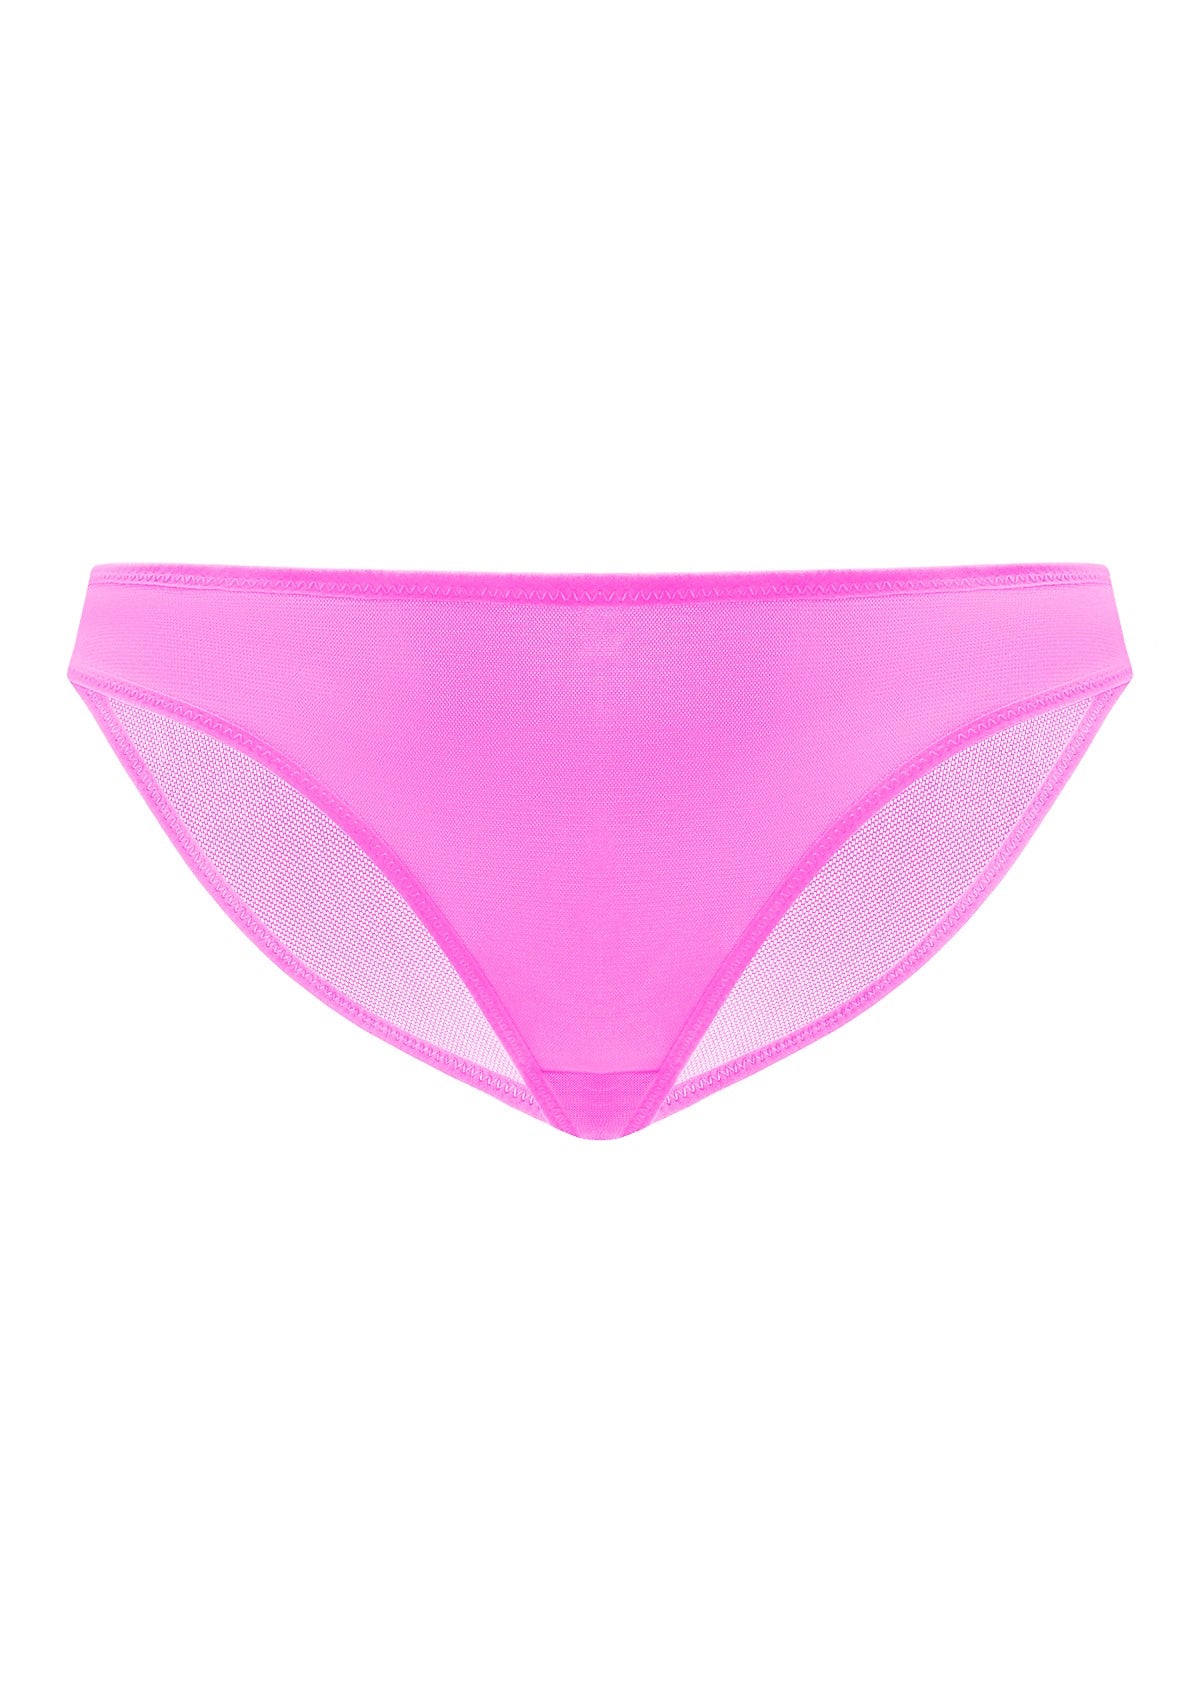 HSIA Billie Smooth Sheer Mesh Lightweight Soft Comfy Bikini Underwear - S / Black